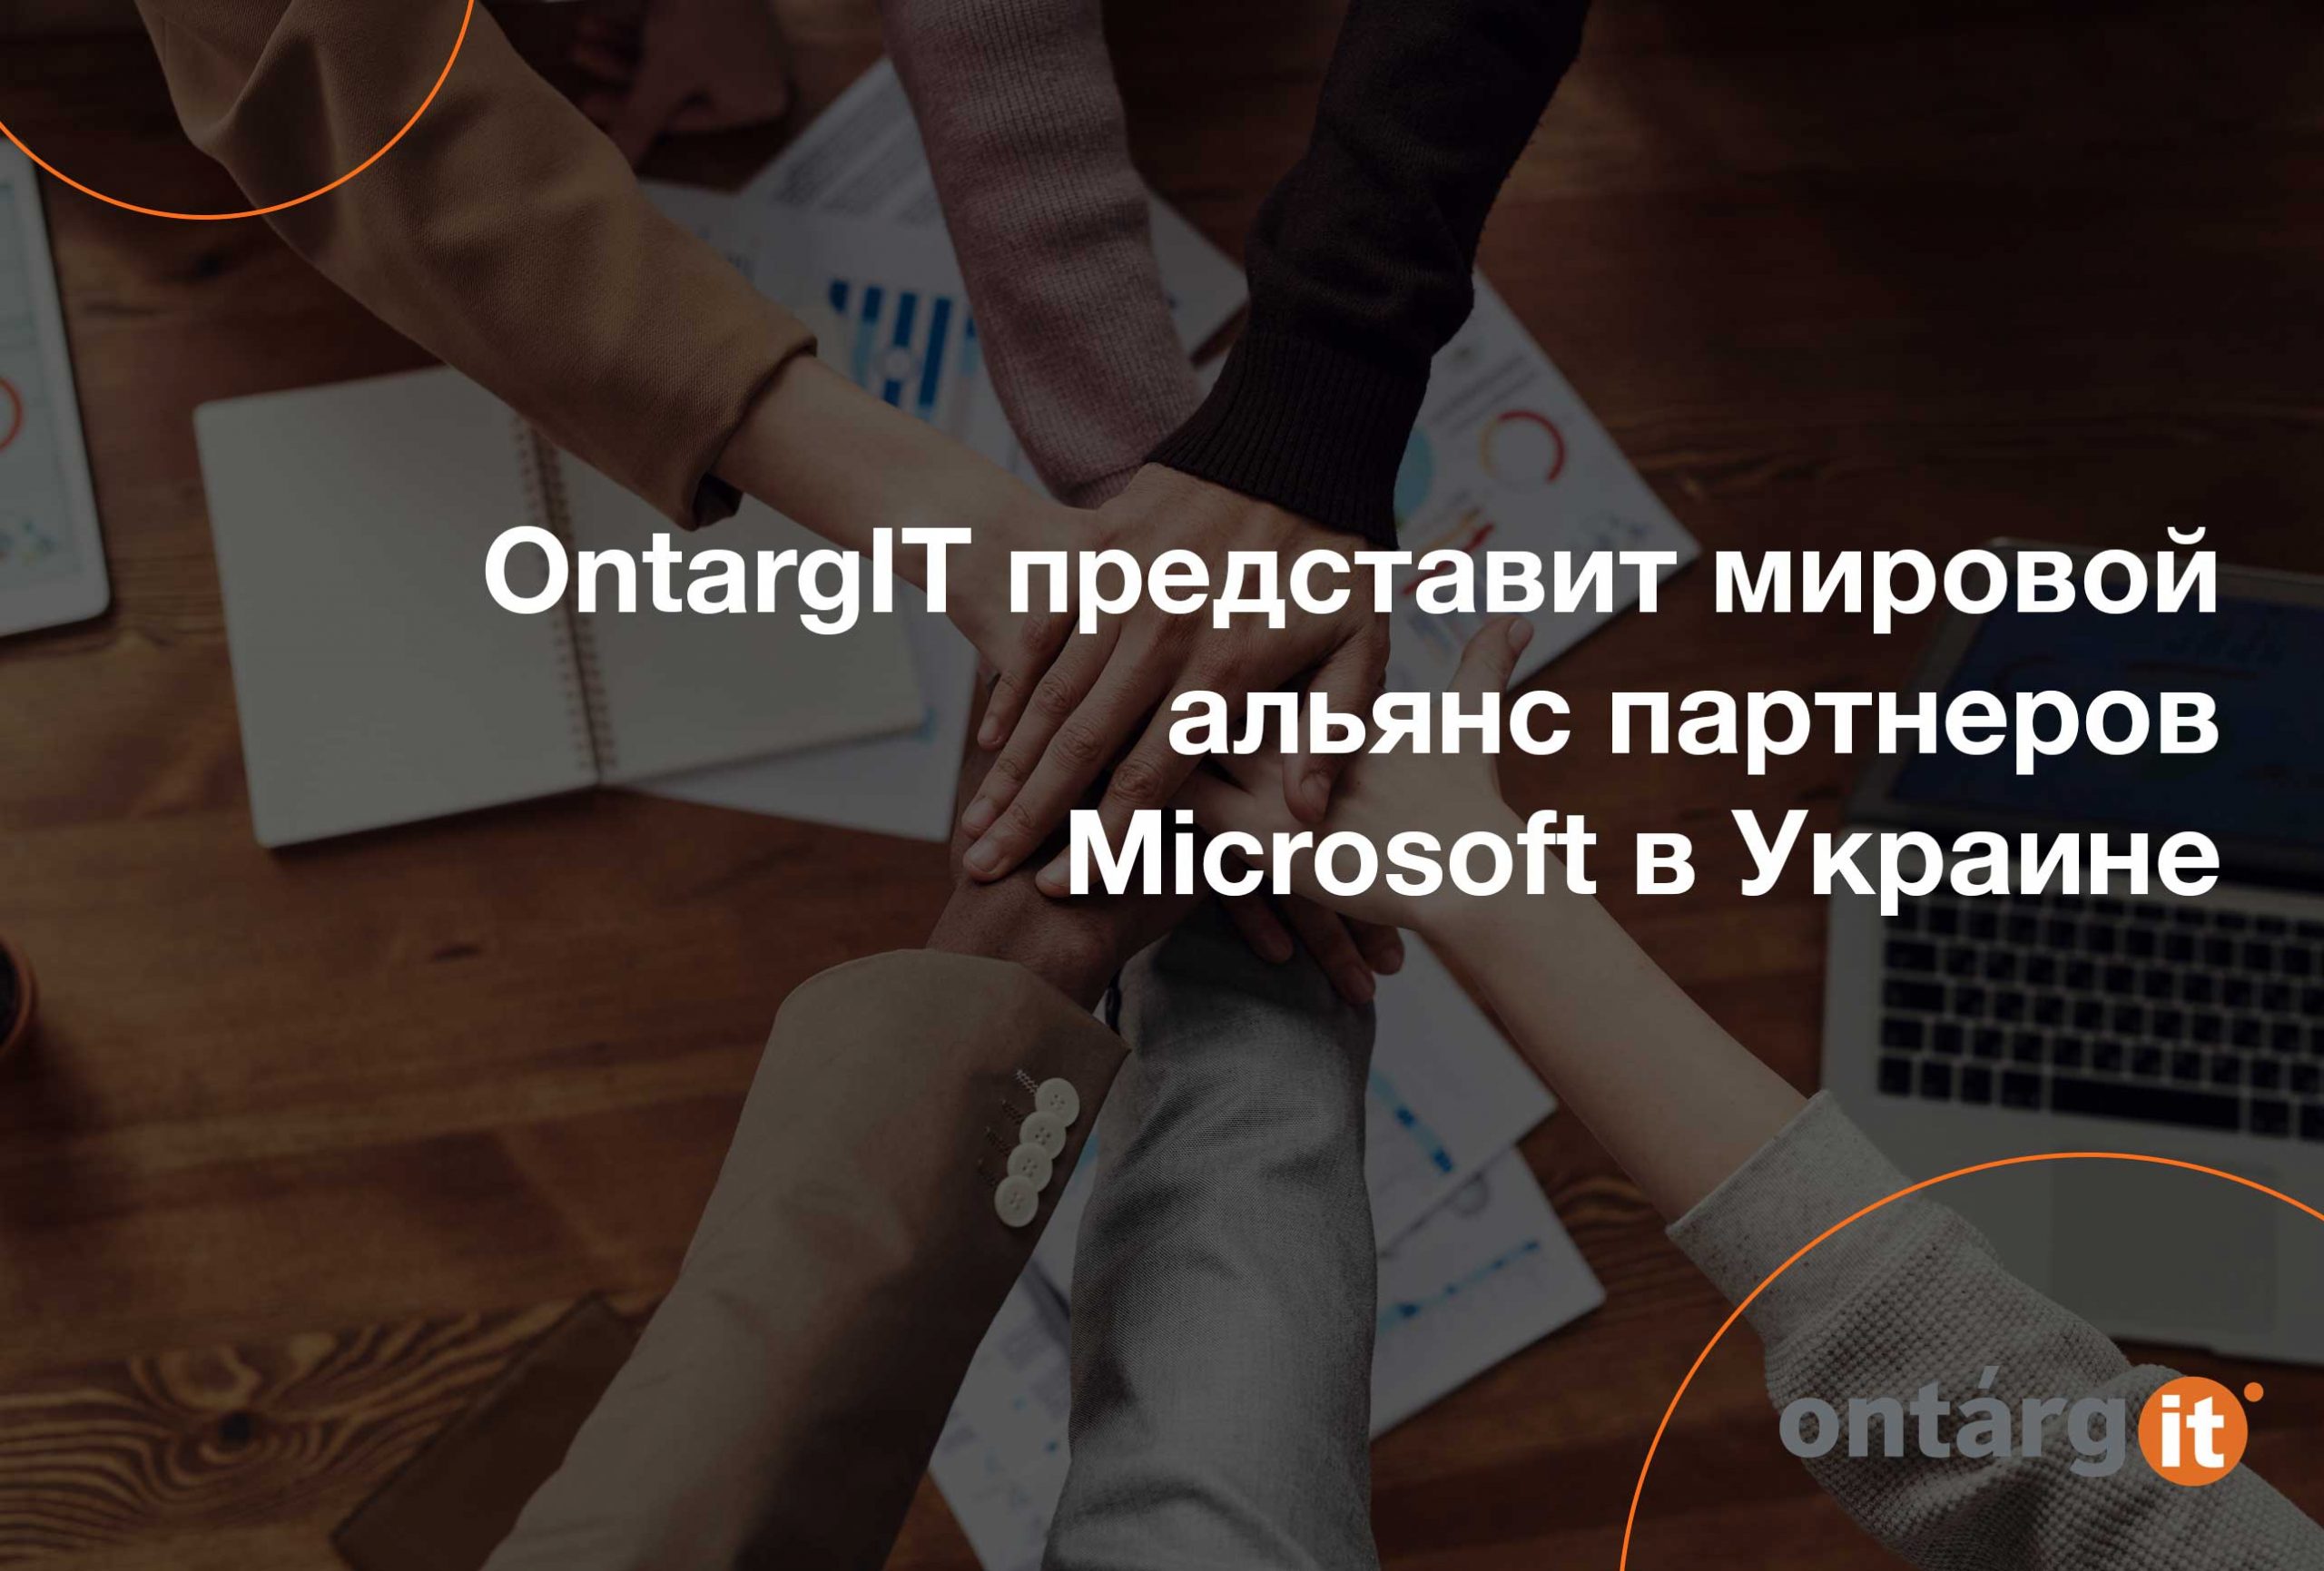 OntargIT представит мировой альянс партнеров Microsoft в Украине